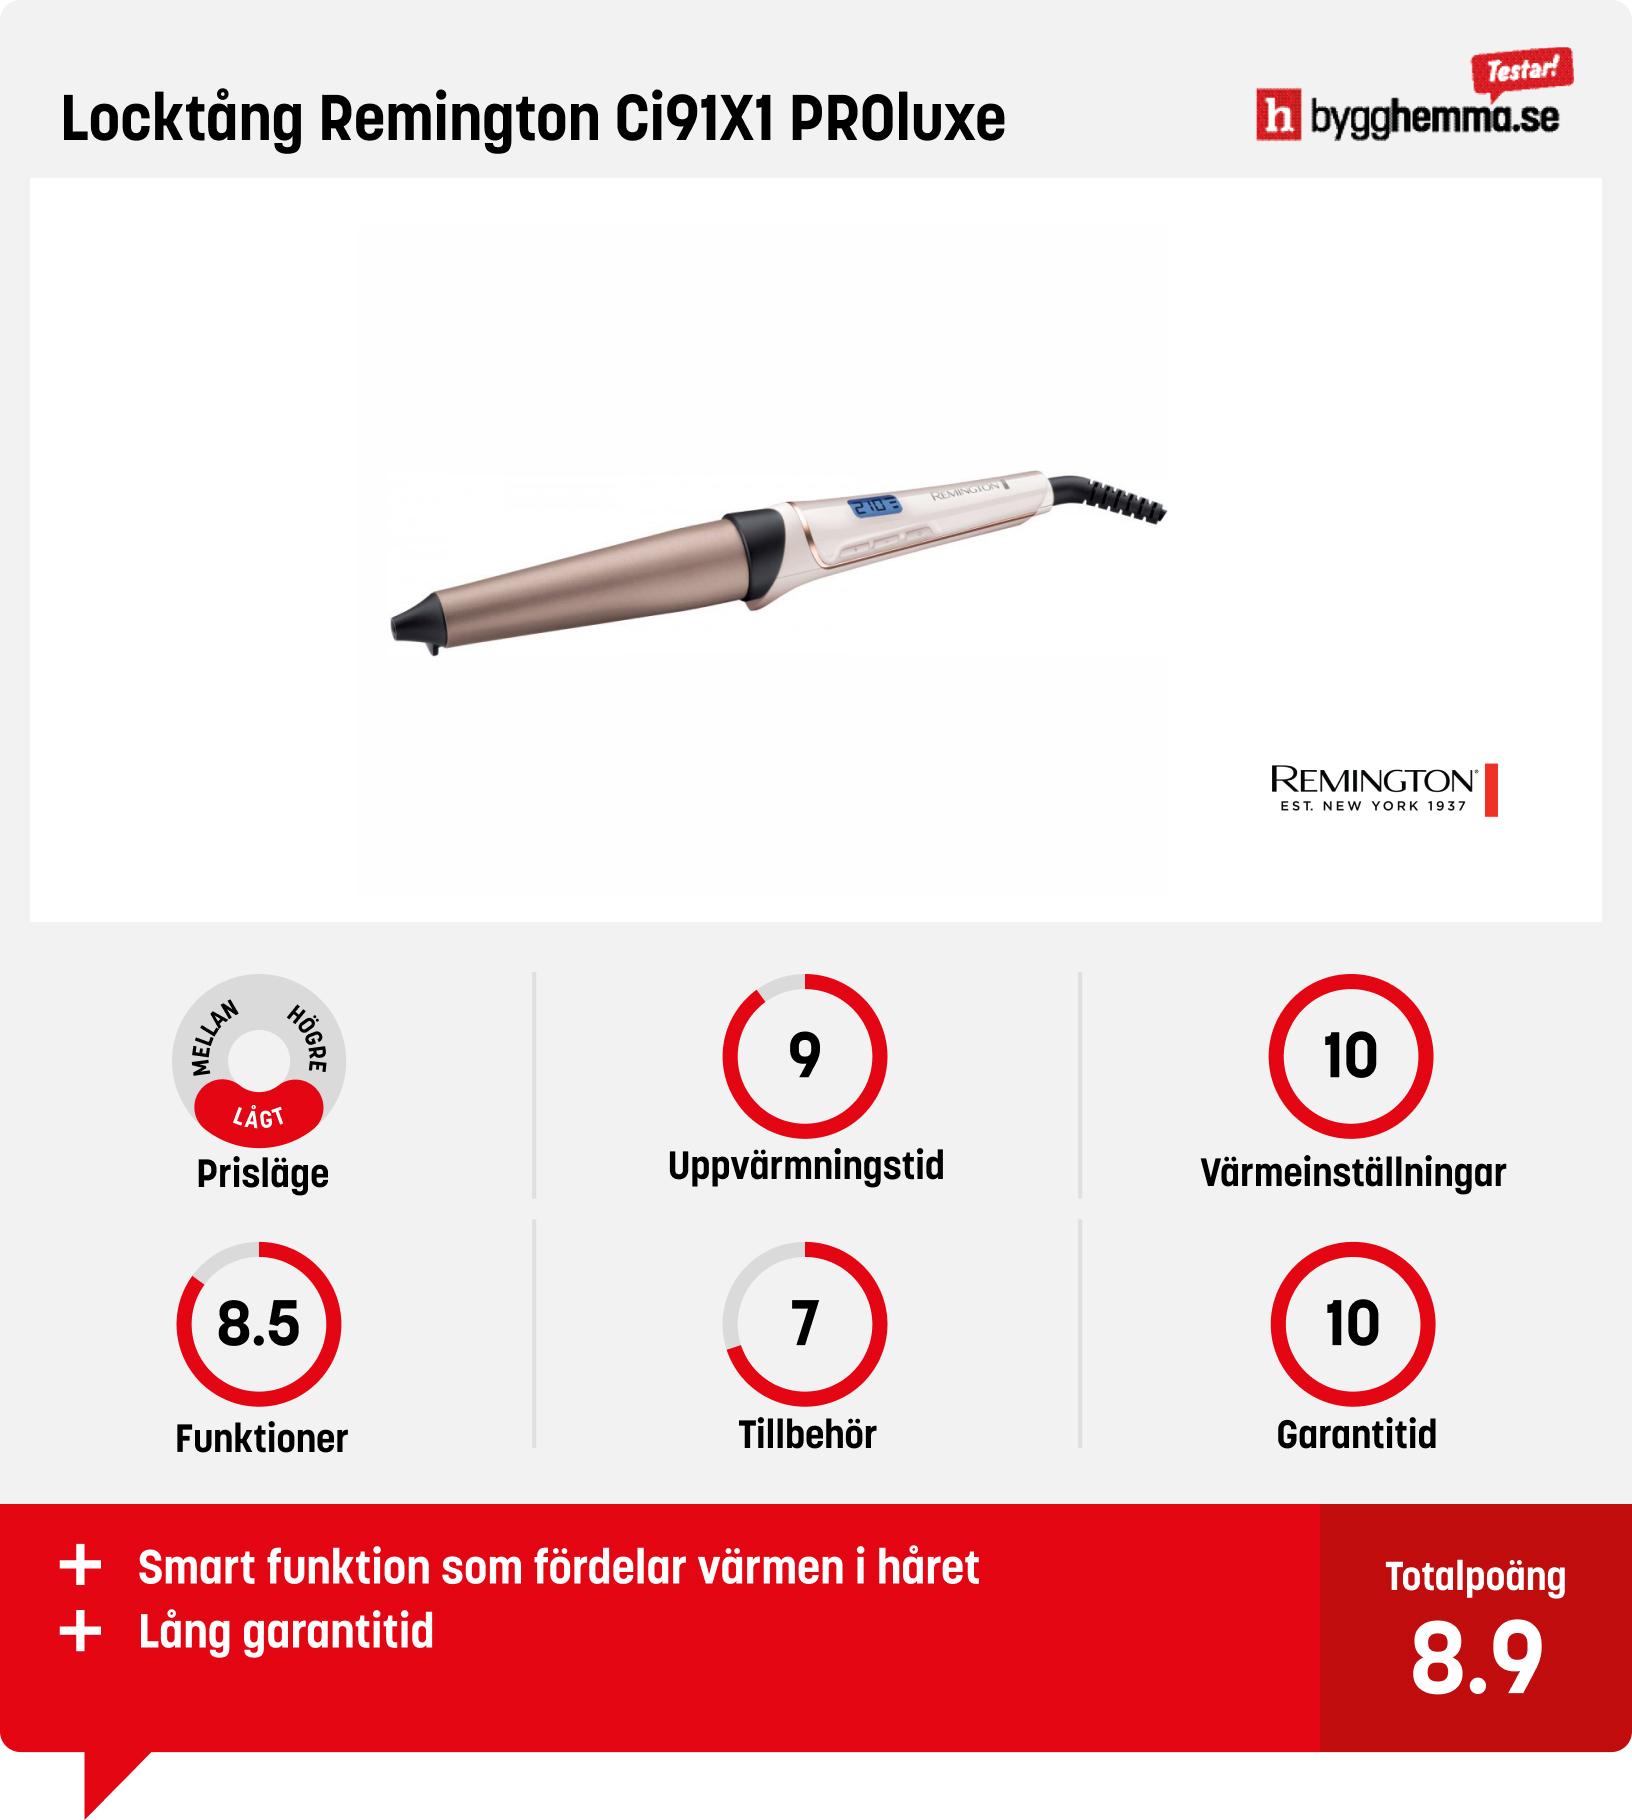 Locktång bäst i test - Locktång Remington Ci91X1 PROluxe